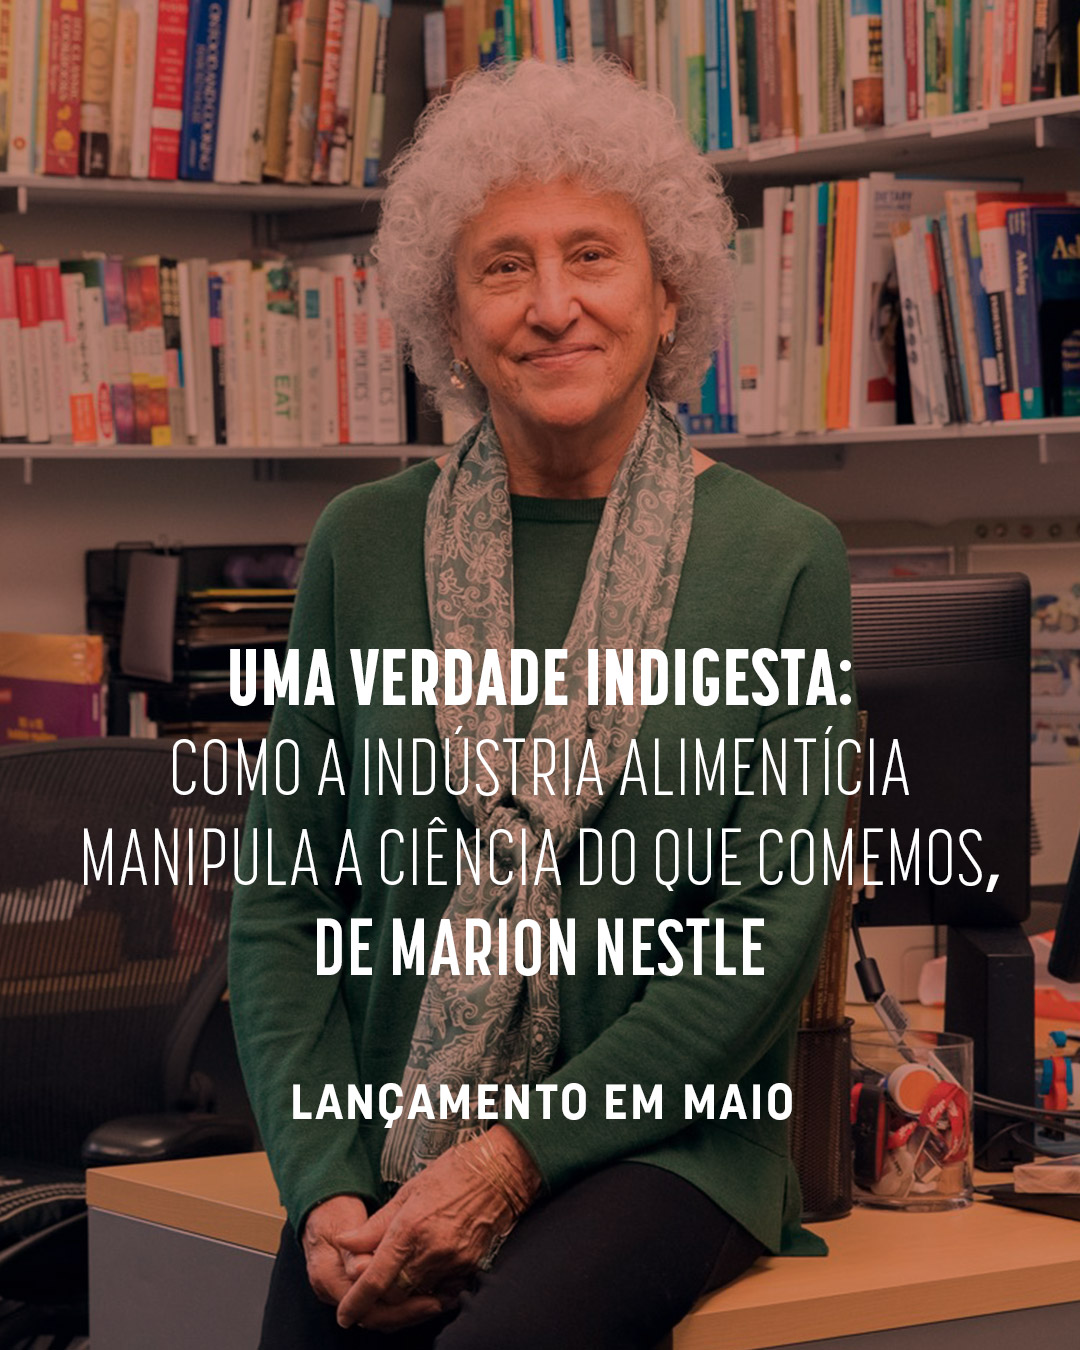 Tudo sobre a vinda de Marion Nestle ao Brasil